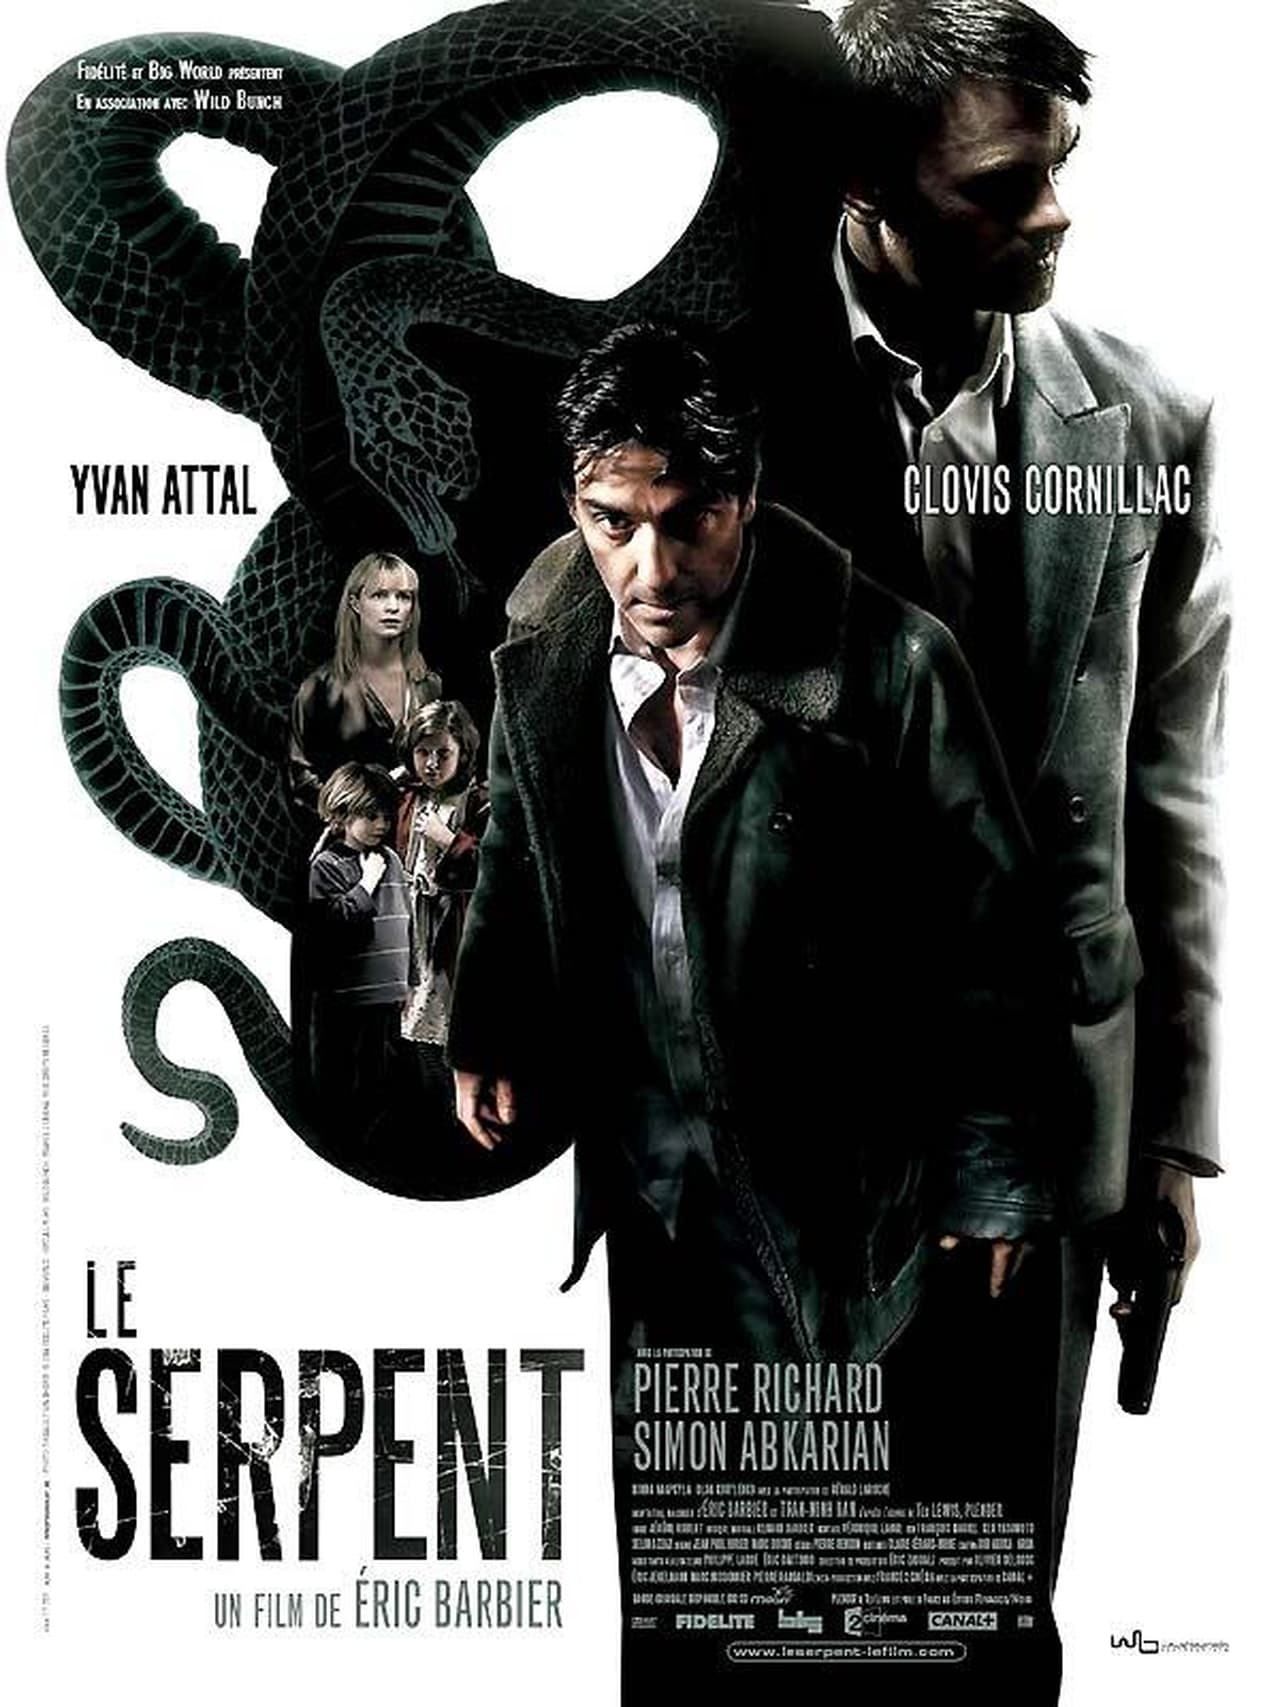 FR - Le Serpent (2006) - PIERRE RICHARD